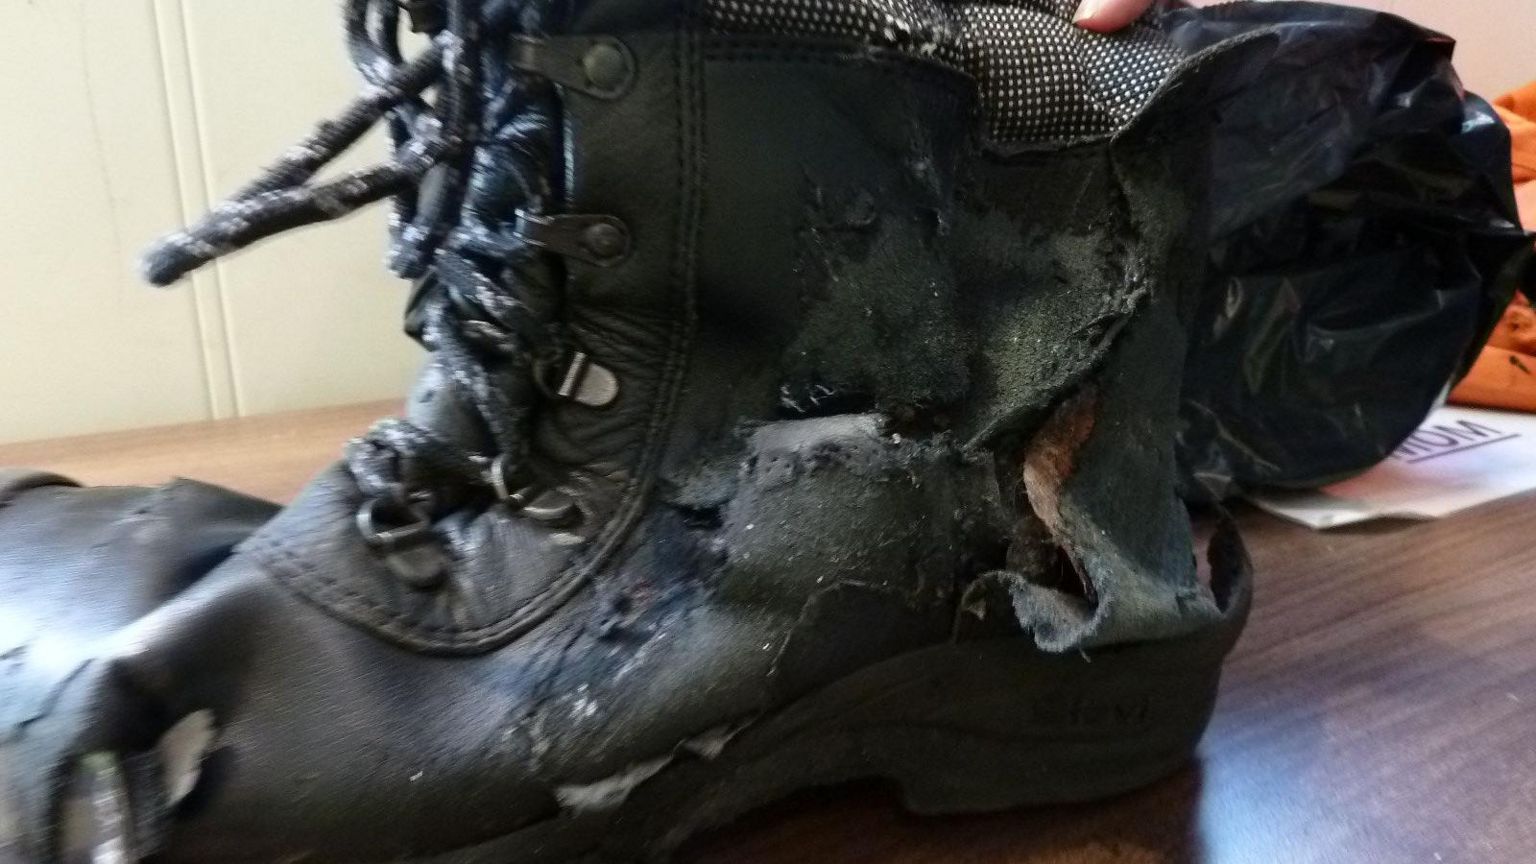 Martin Hill's damaged boot